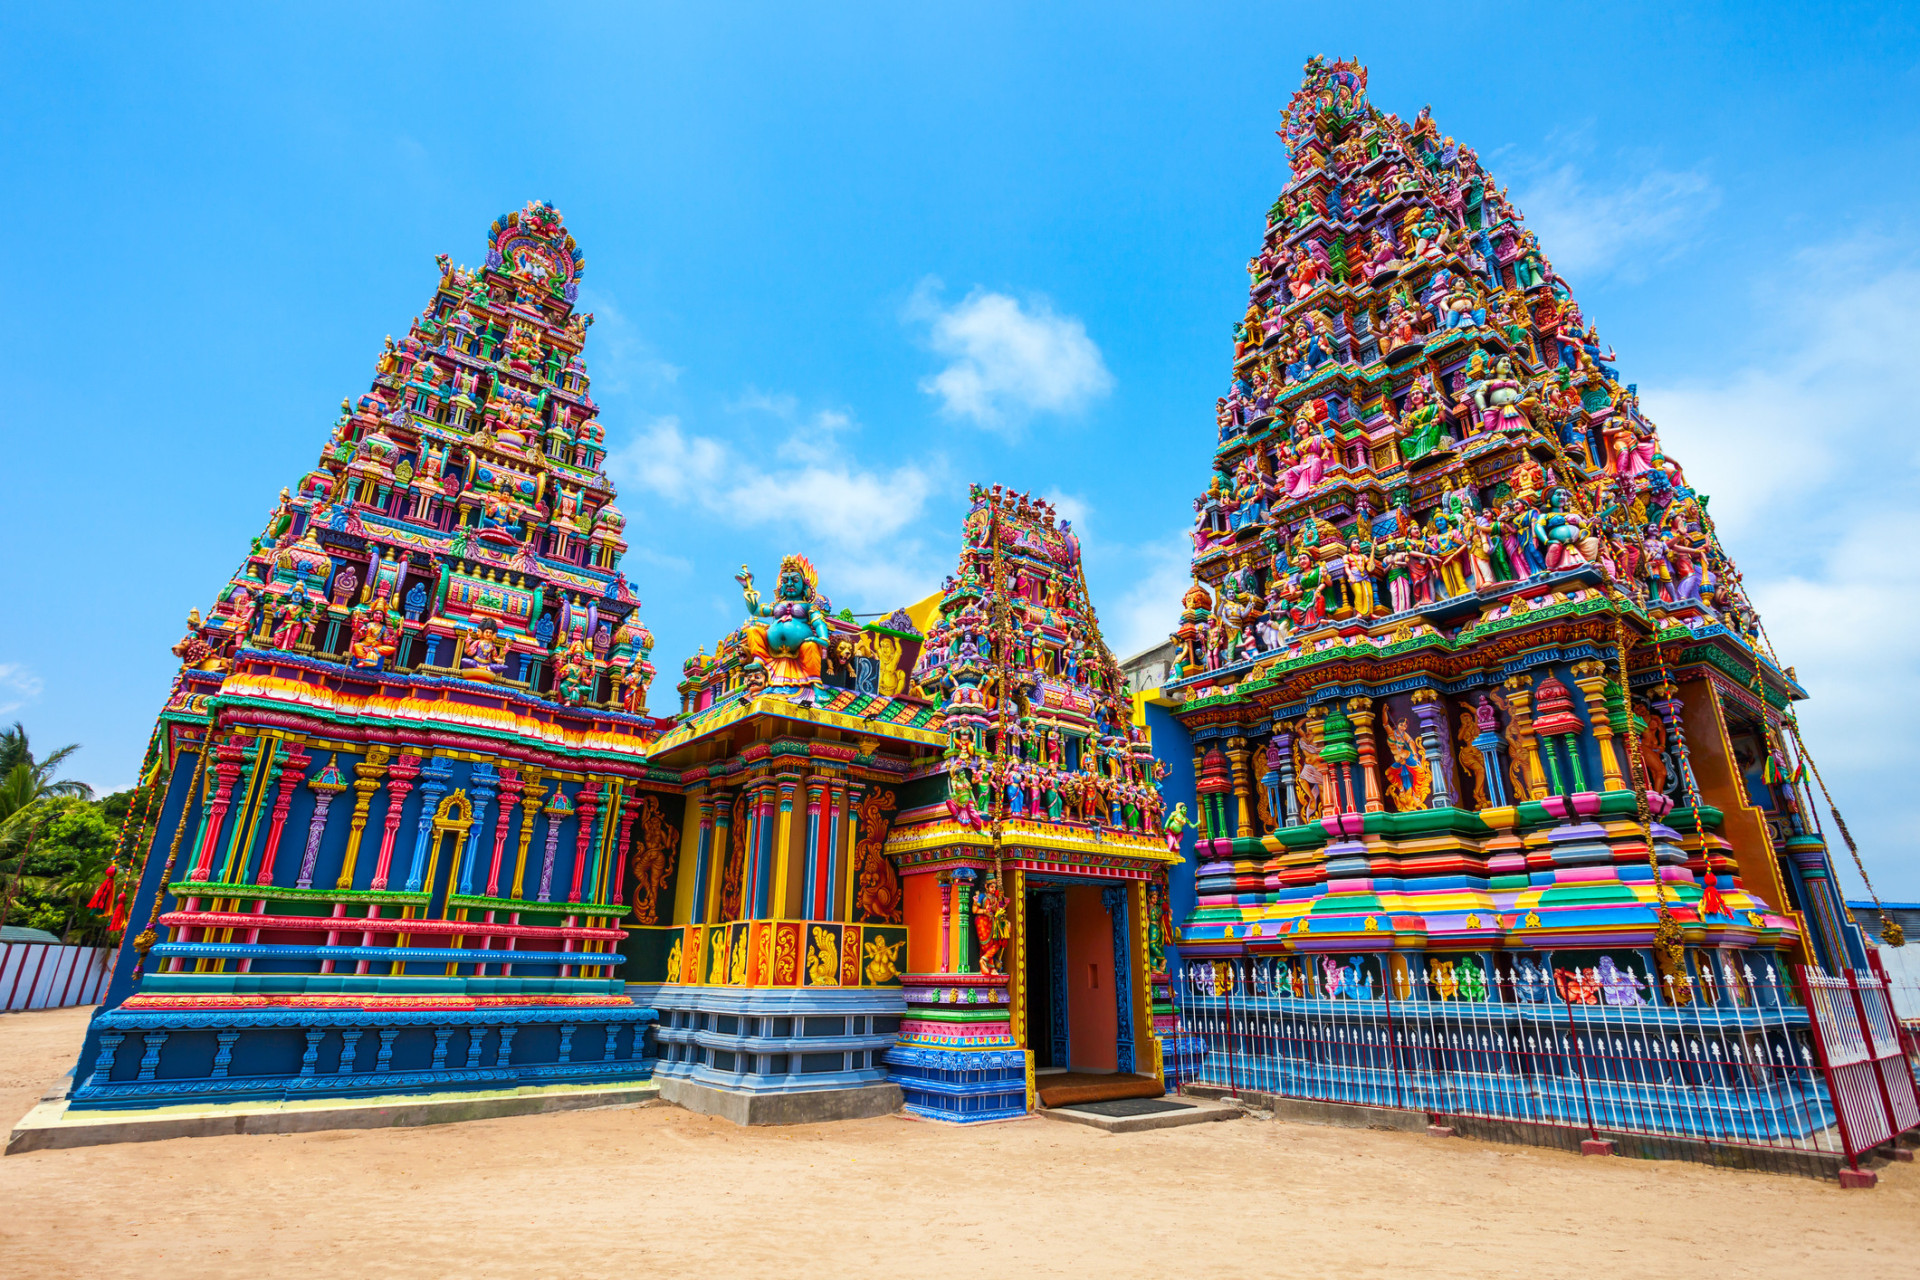 La saison de la mousson, "Maha", frappe les régions de l'est et du nord de novembre à mars environ. Trincomalee, sur la côte nord-est du Sri Lanka, est célèbre pour son temple décoratif de Pathirakali Amman. Visitez cette magnifique région d'avril à septembre.<p><a href="https://www.msn.com/fr-fr/community/channel/vid-7xx8mnucu55yw63we9va2gwr7uihbxwc68fxqp25x6tg4ftibpra?cvid=94631541bc0f4f89bfd59158d696ad7e">Suivez-nous et accédez tous les jours à du contenu exclusif</a></p>